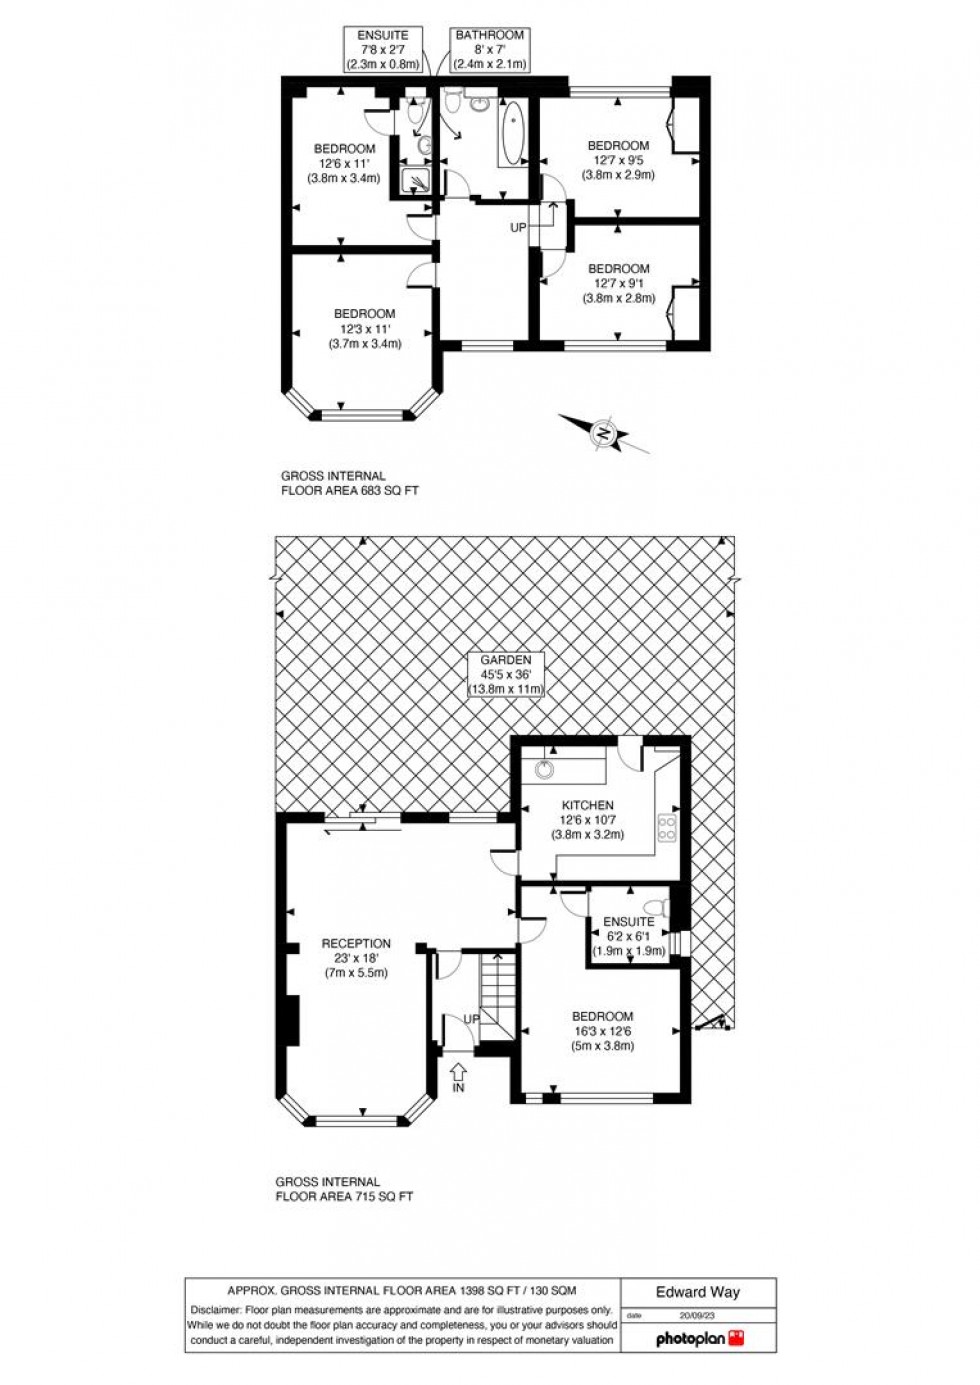 Floorplan for Edward Way, Ashford